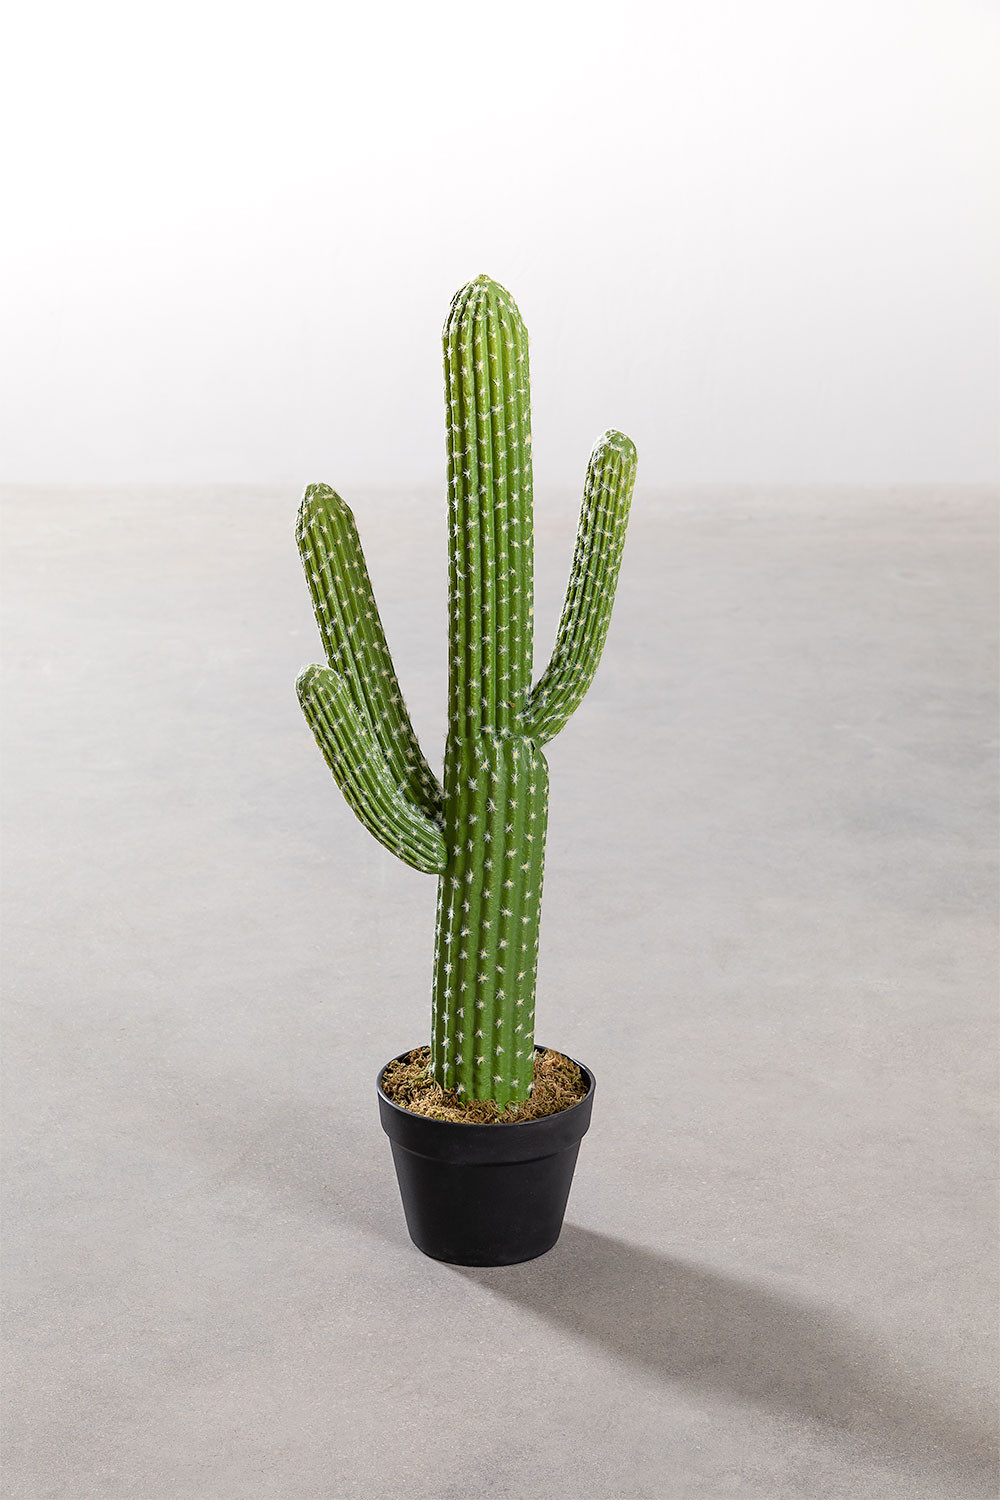 Cactus Artificiel Saguaro 80 cm - SKLUM